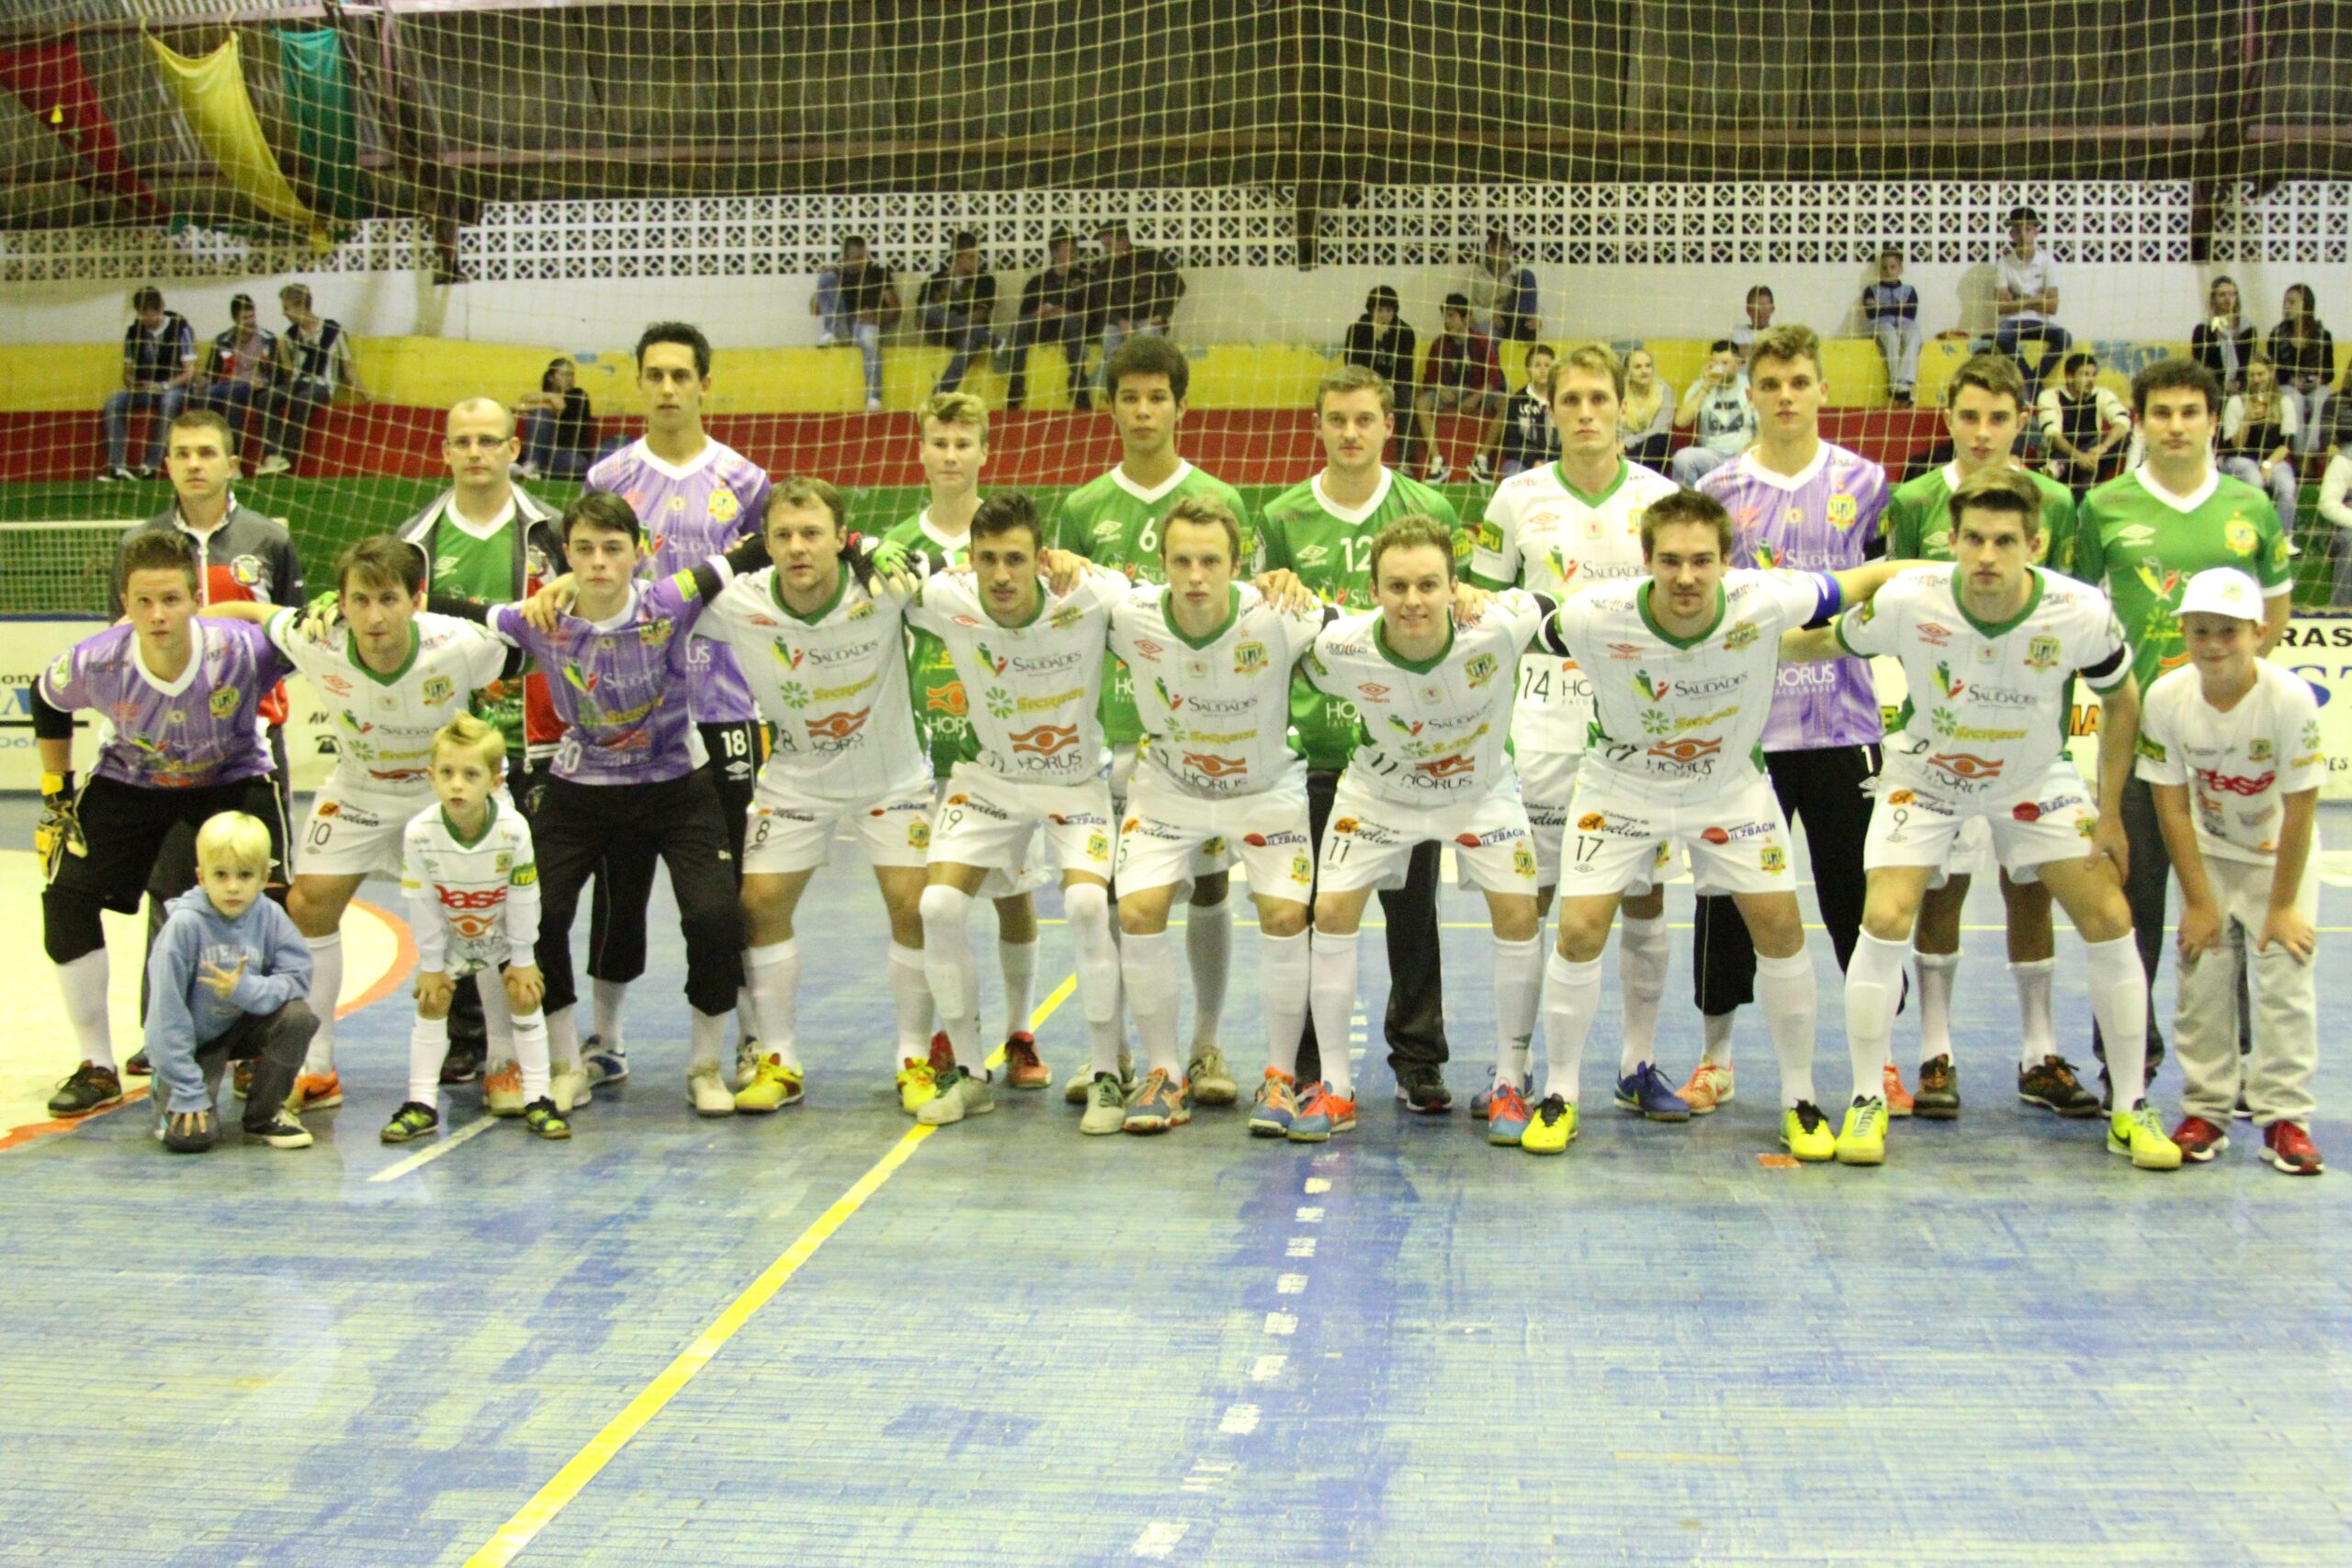 Equipe da ADAF Saudades segue líder no Campeonato Estadual de Futsal da Primeira Divisão, após vitória contra a Adesp